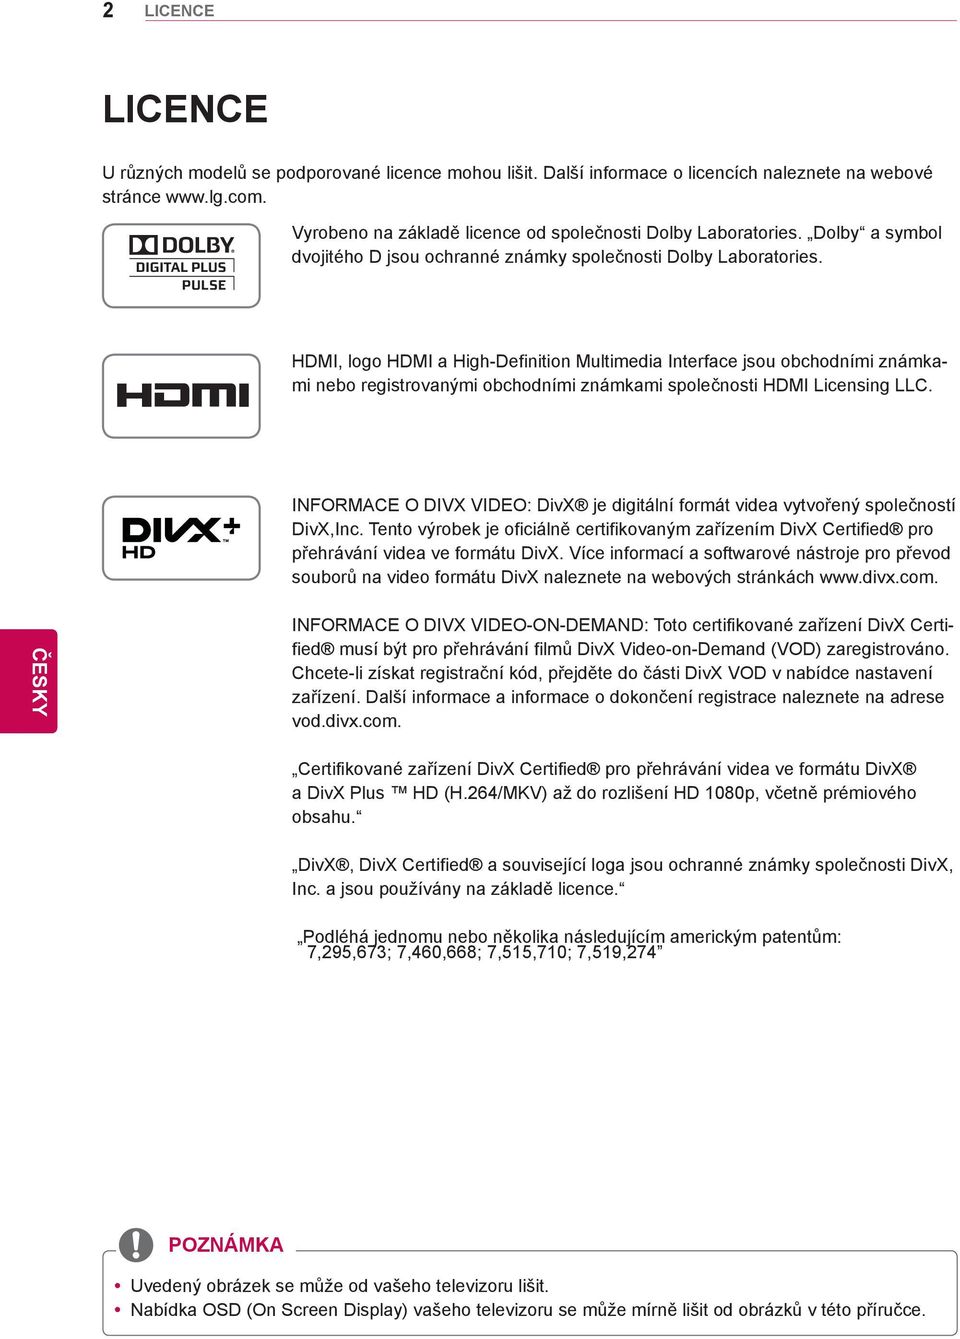 HDMI, logo HDMI a High-Definition Multimedia Interface jsou obchodními známkami nebo registrovanými obchodními známkami společnosti HDMI Licensing LLC.